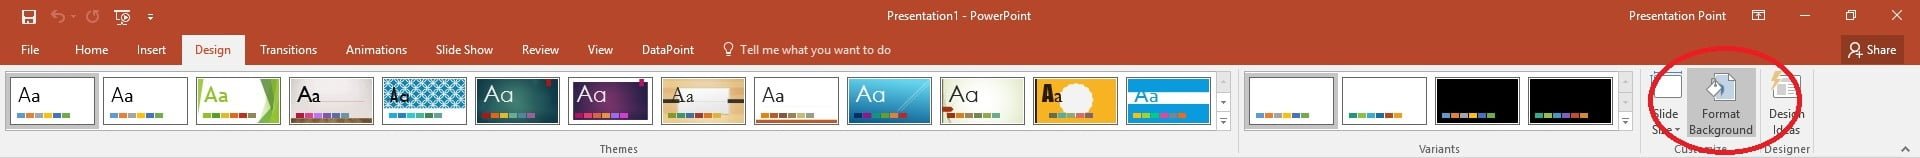 powerpoint design menu format background button